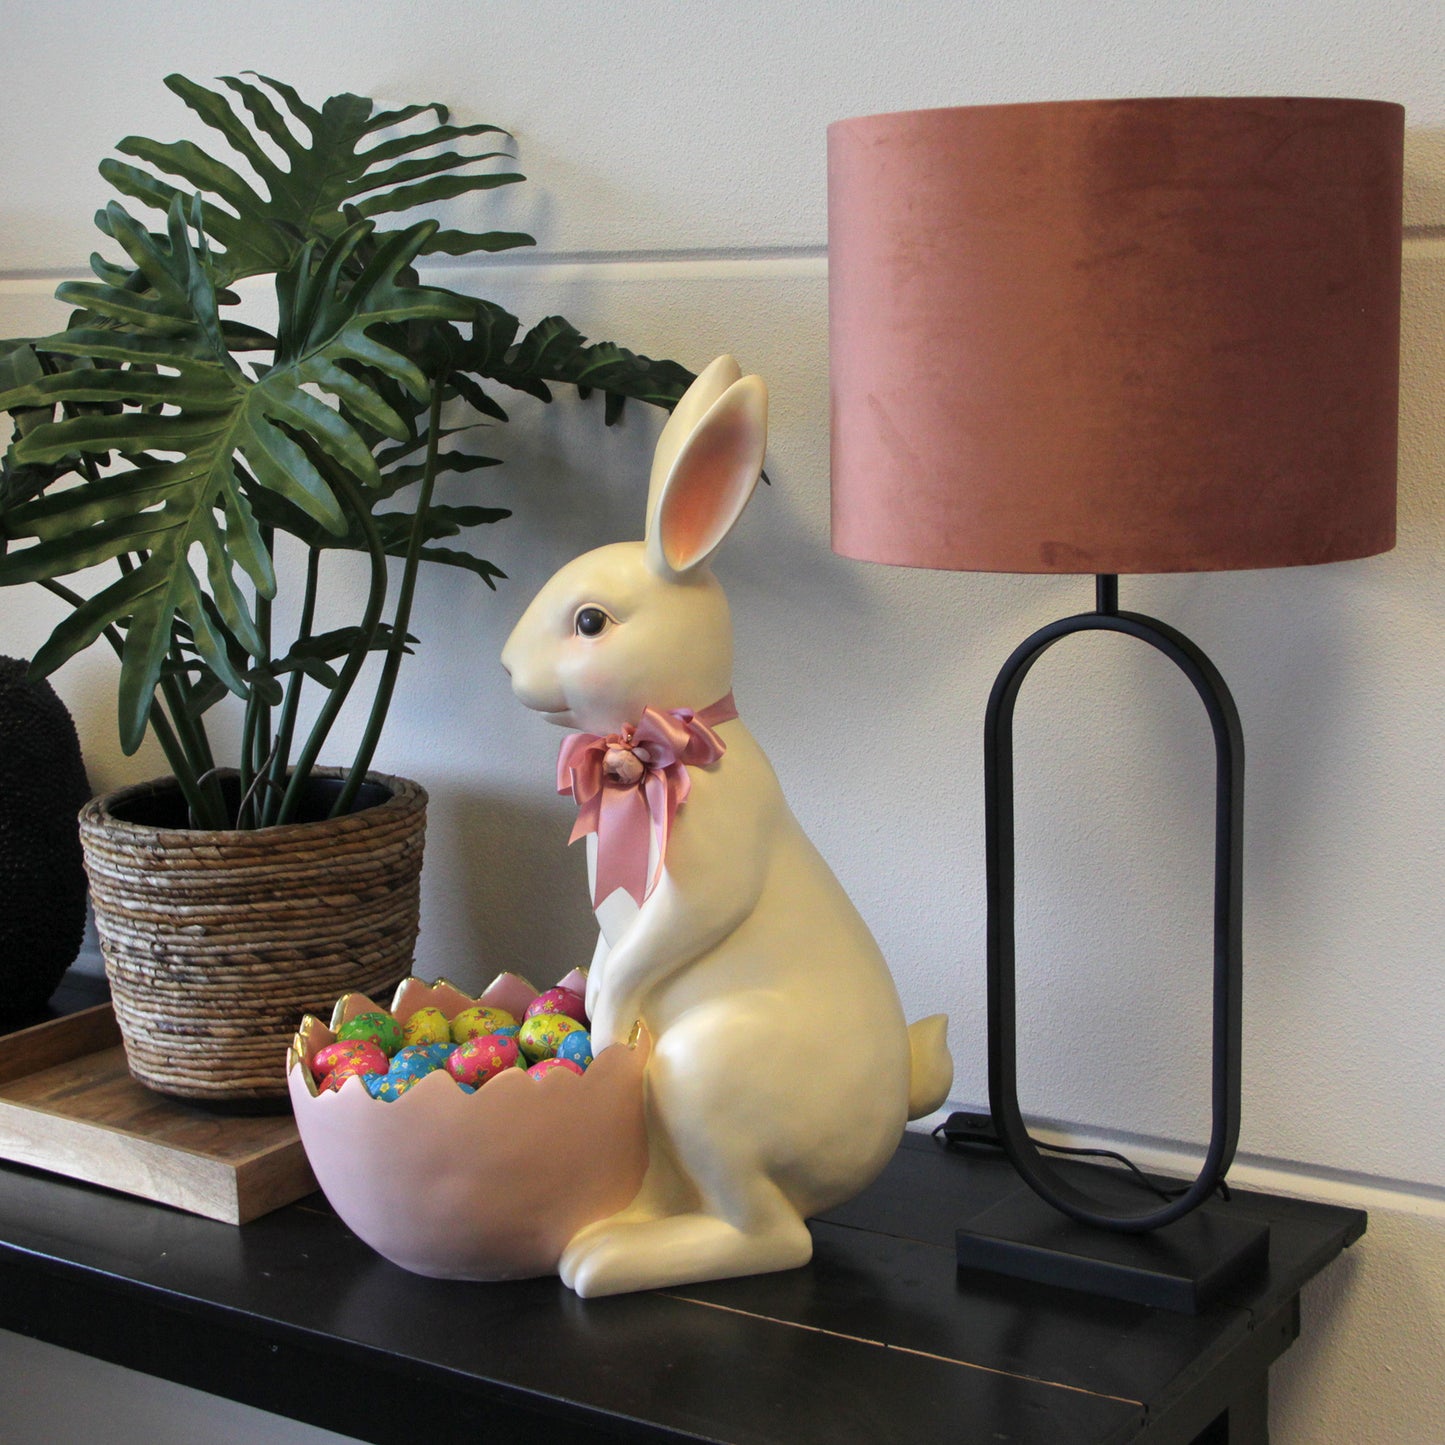 Viv! Home Luxuries Paasdecoratie - Schaal Paashaas met eierschaal - groot - wit roze - 70cm